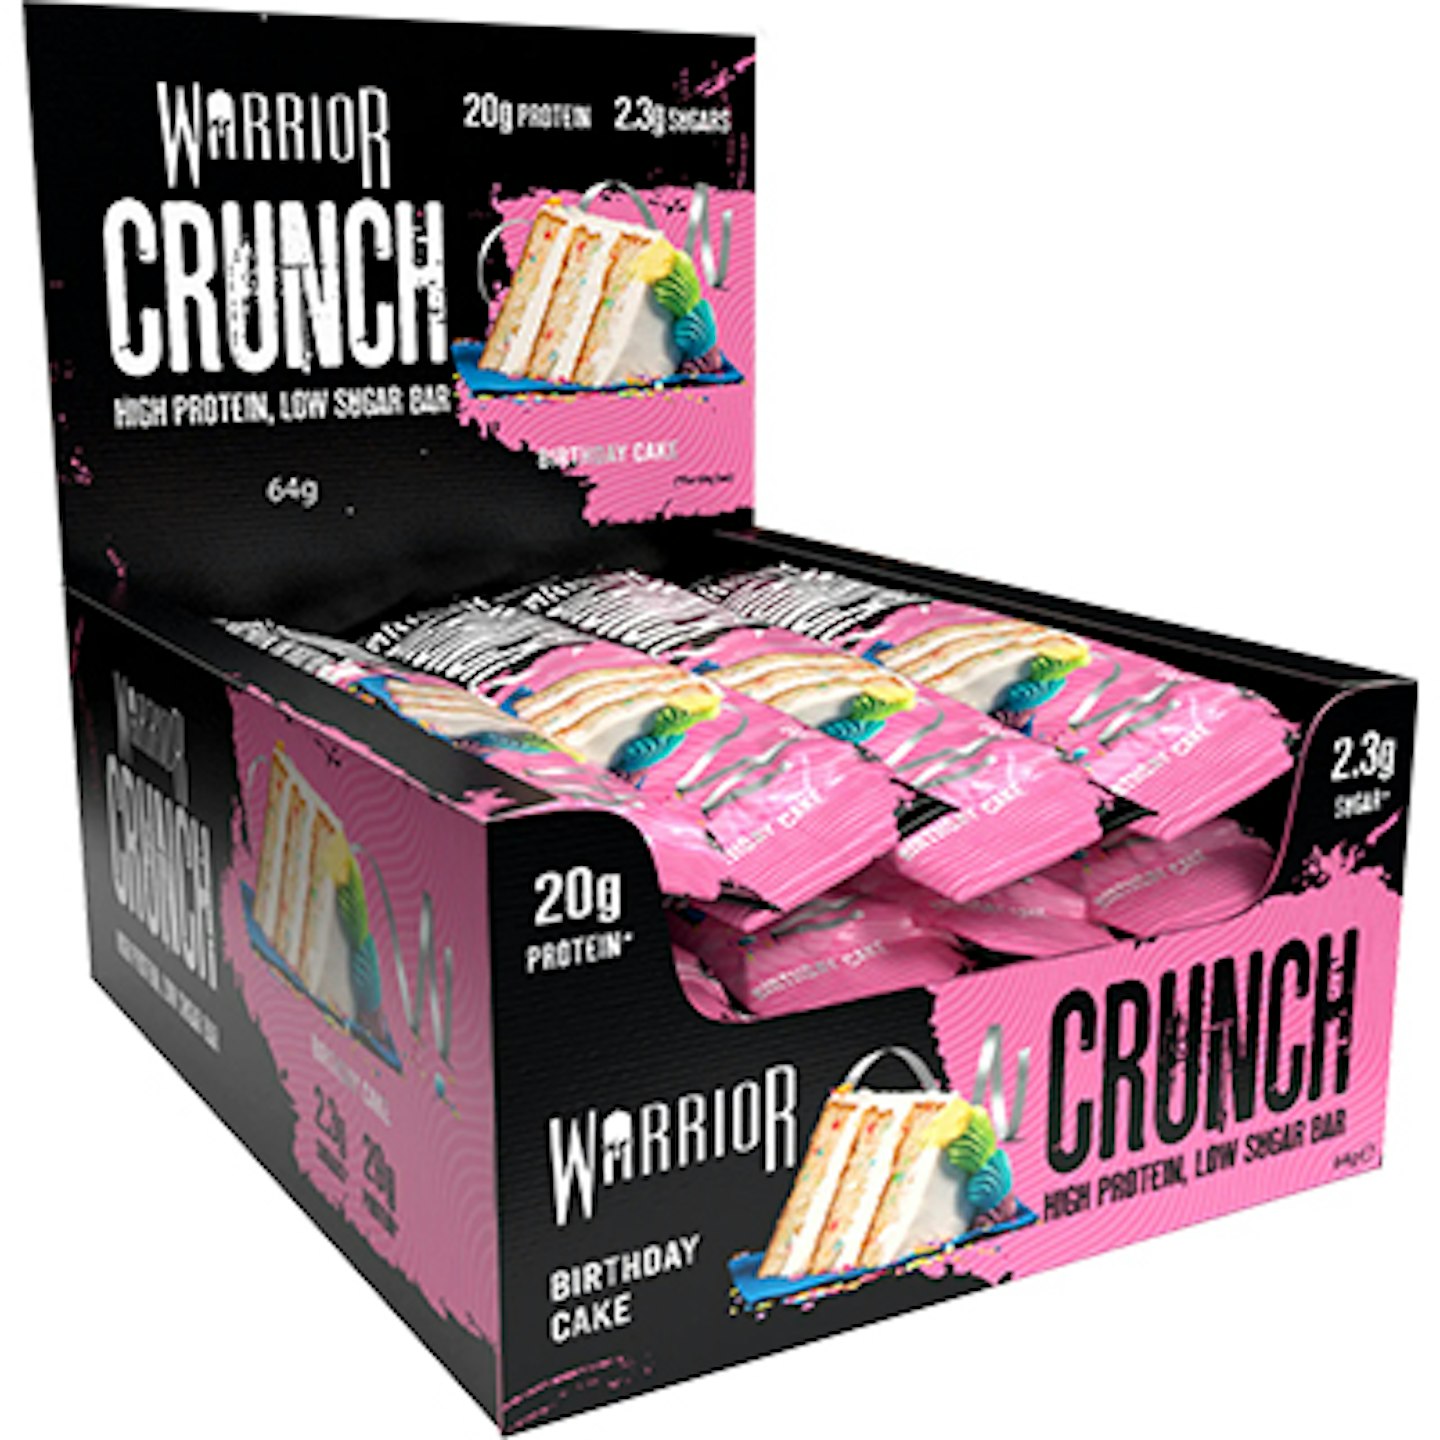 Warrior Crunch birthday cake protein bar